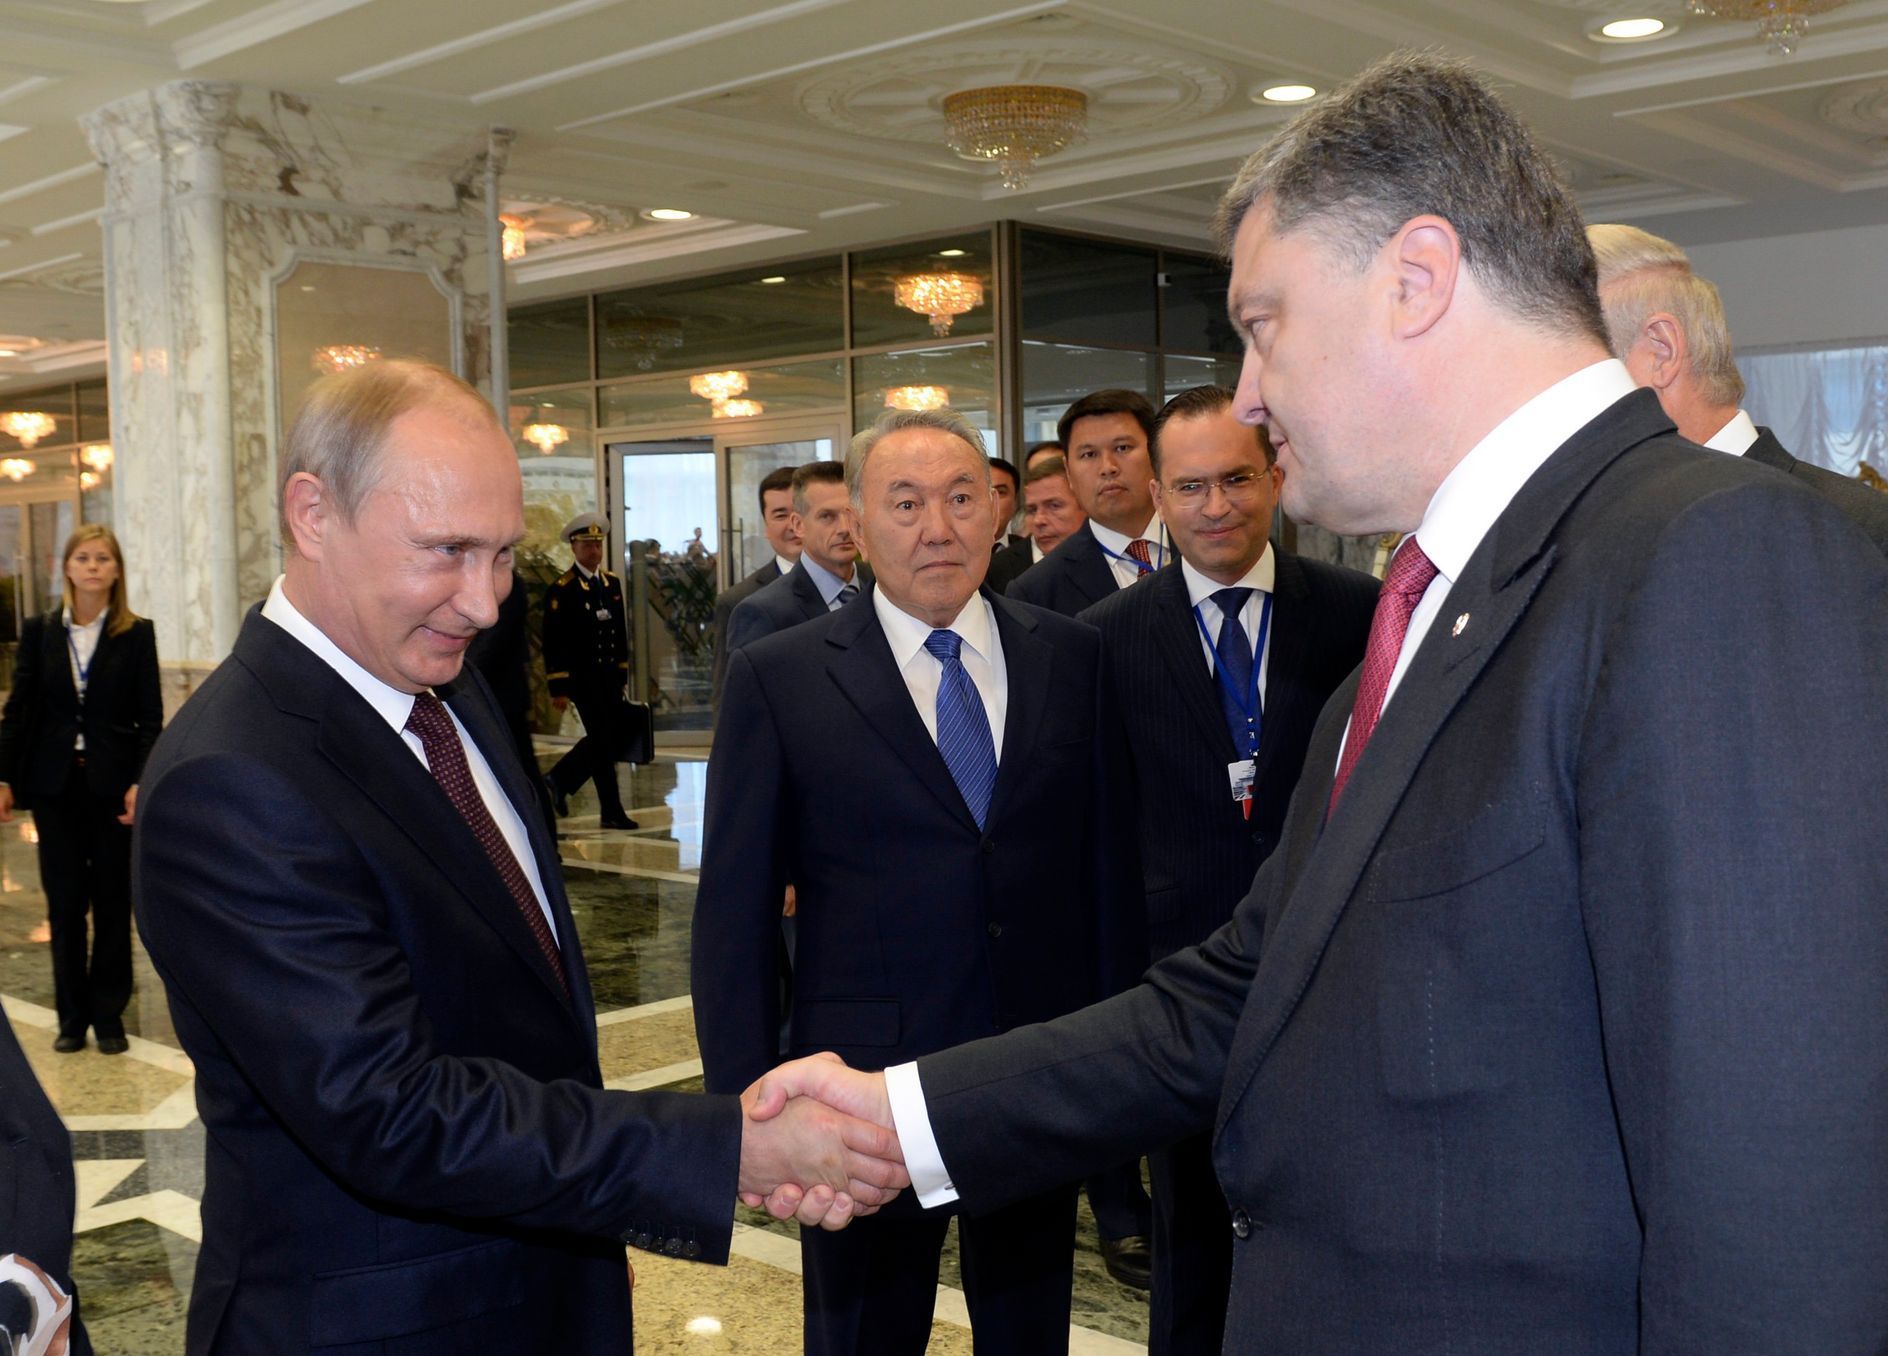 Ruský prezident Vladimir Putin si potřásá rukou s ukrajinským prezidentem Ptrem Porošenkem